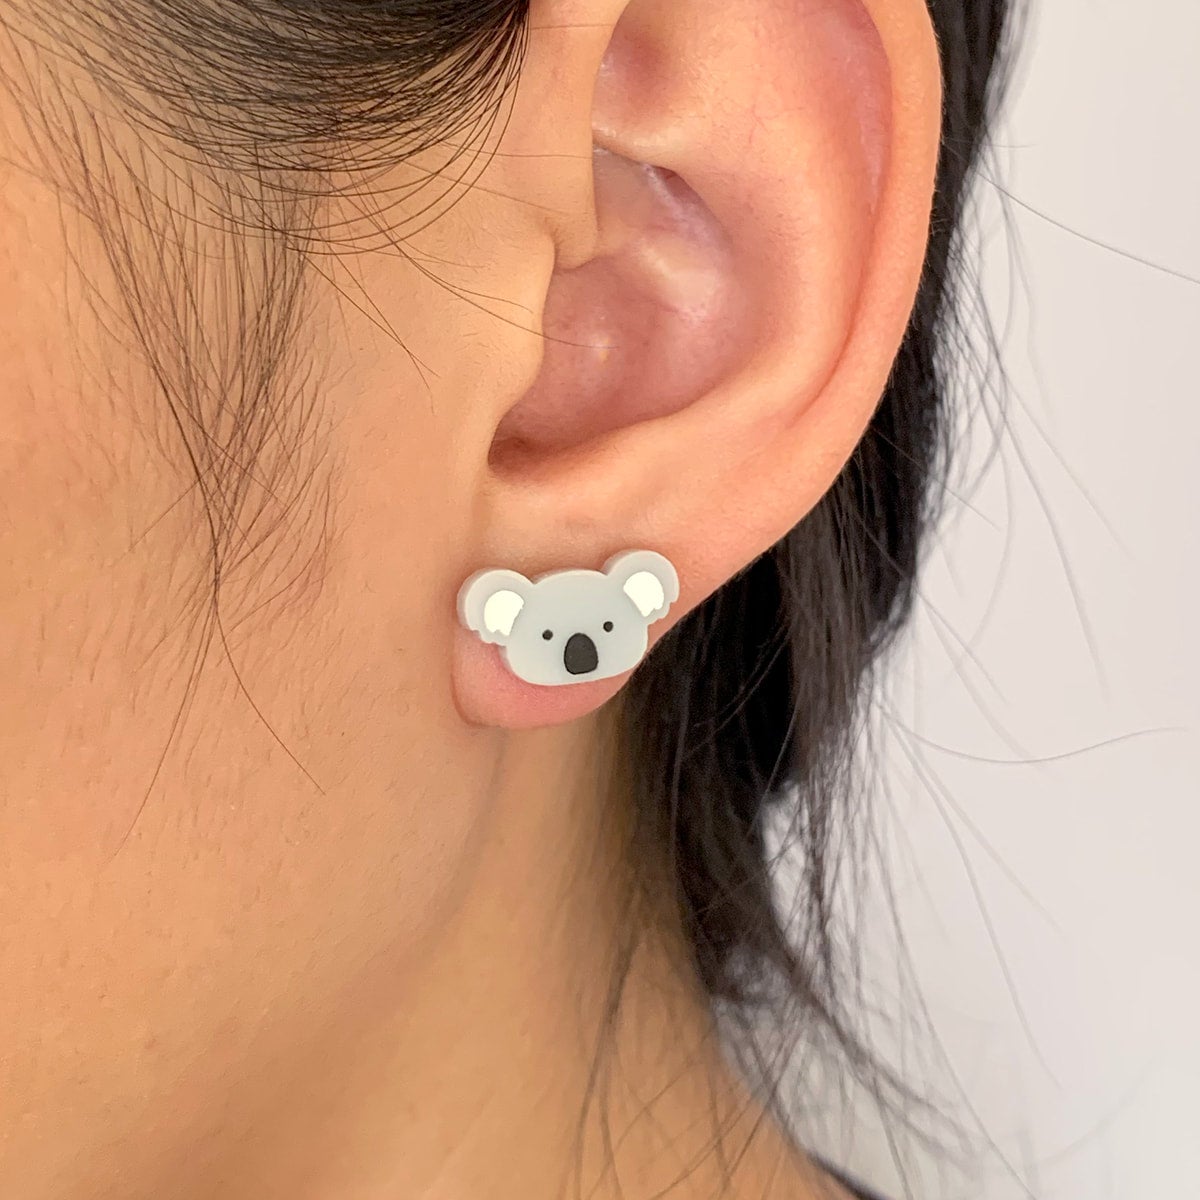 Titanium Earrings - Hypoallergenic Styles For Sensitive Ears - Lovisa